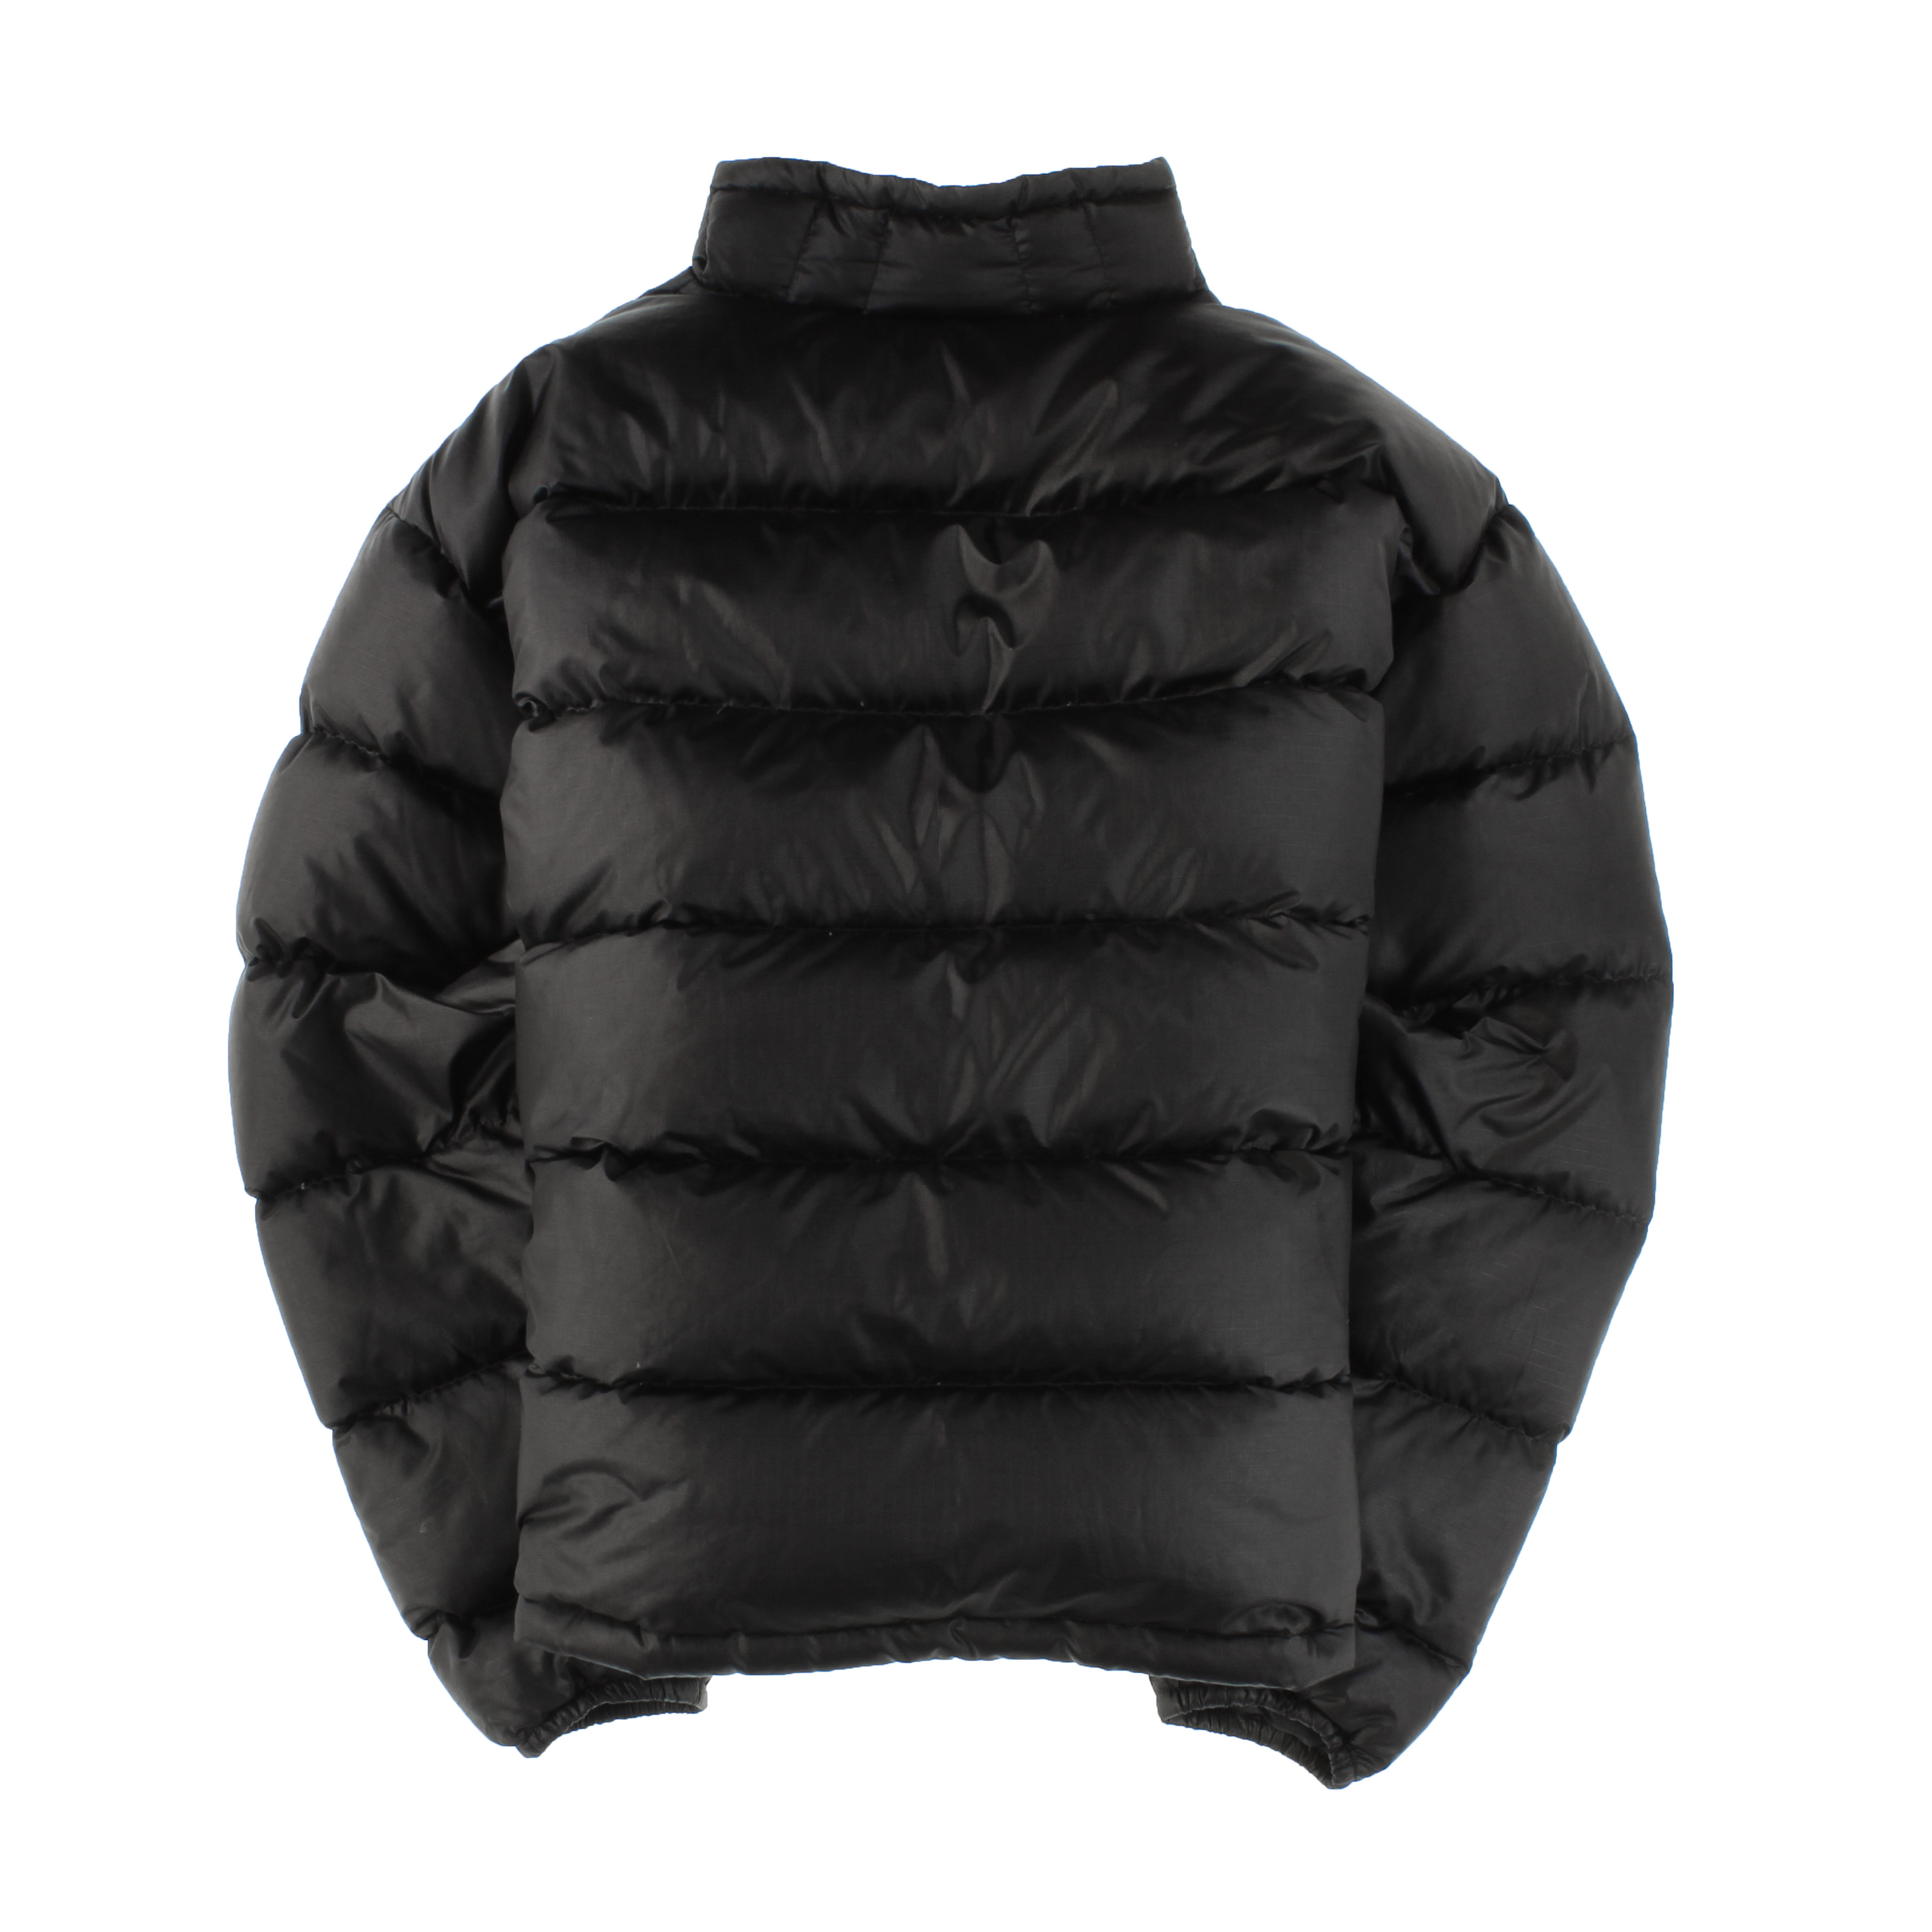 Patagonia Worn Wear Men's Down Jacket Black W/Black - Used